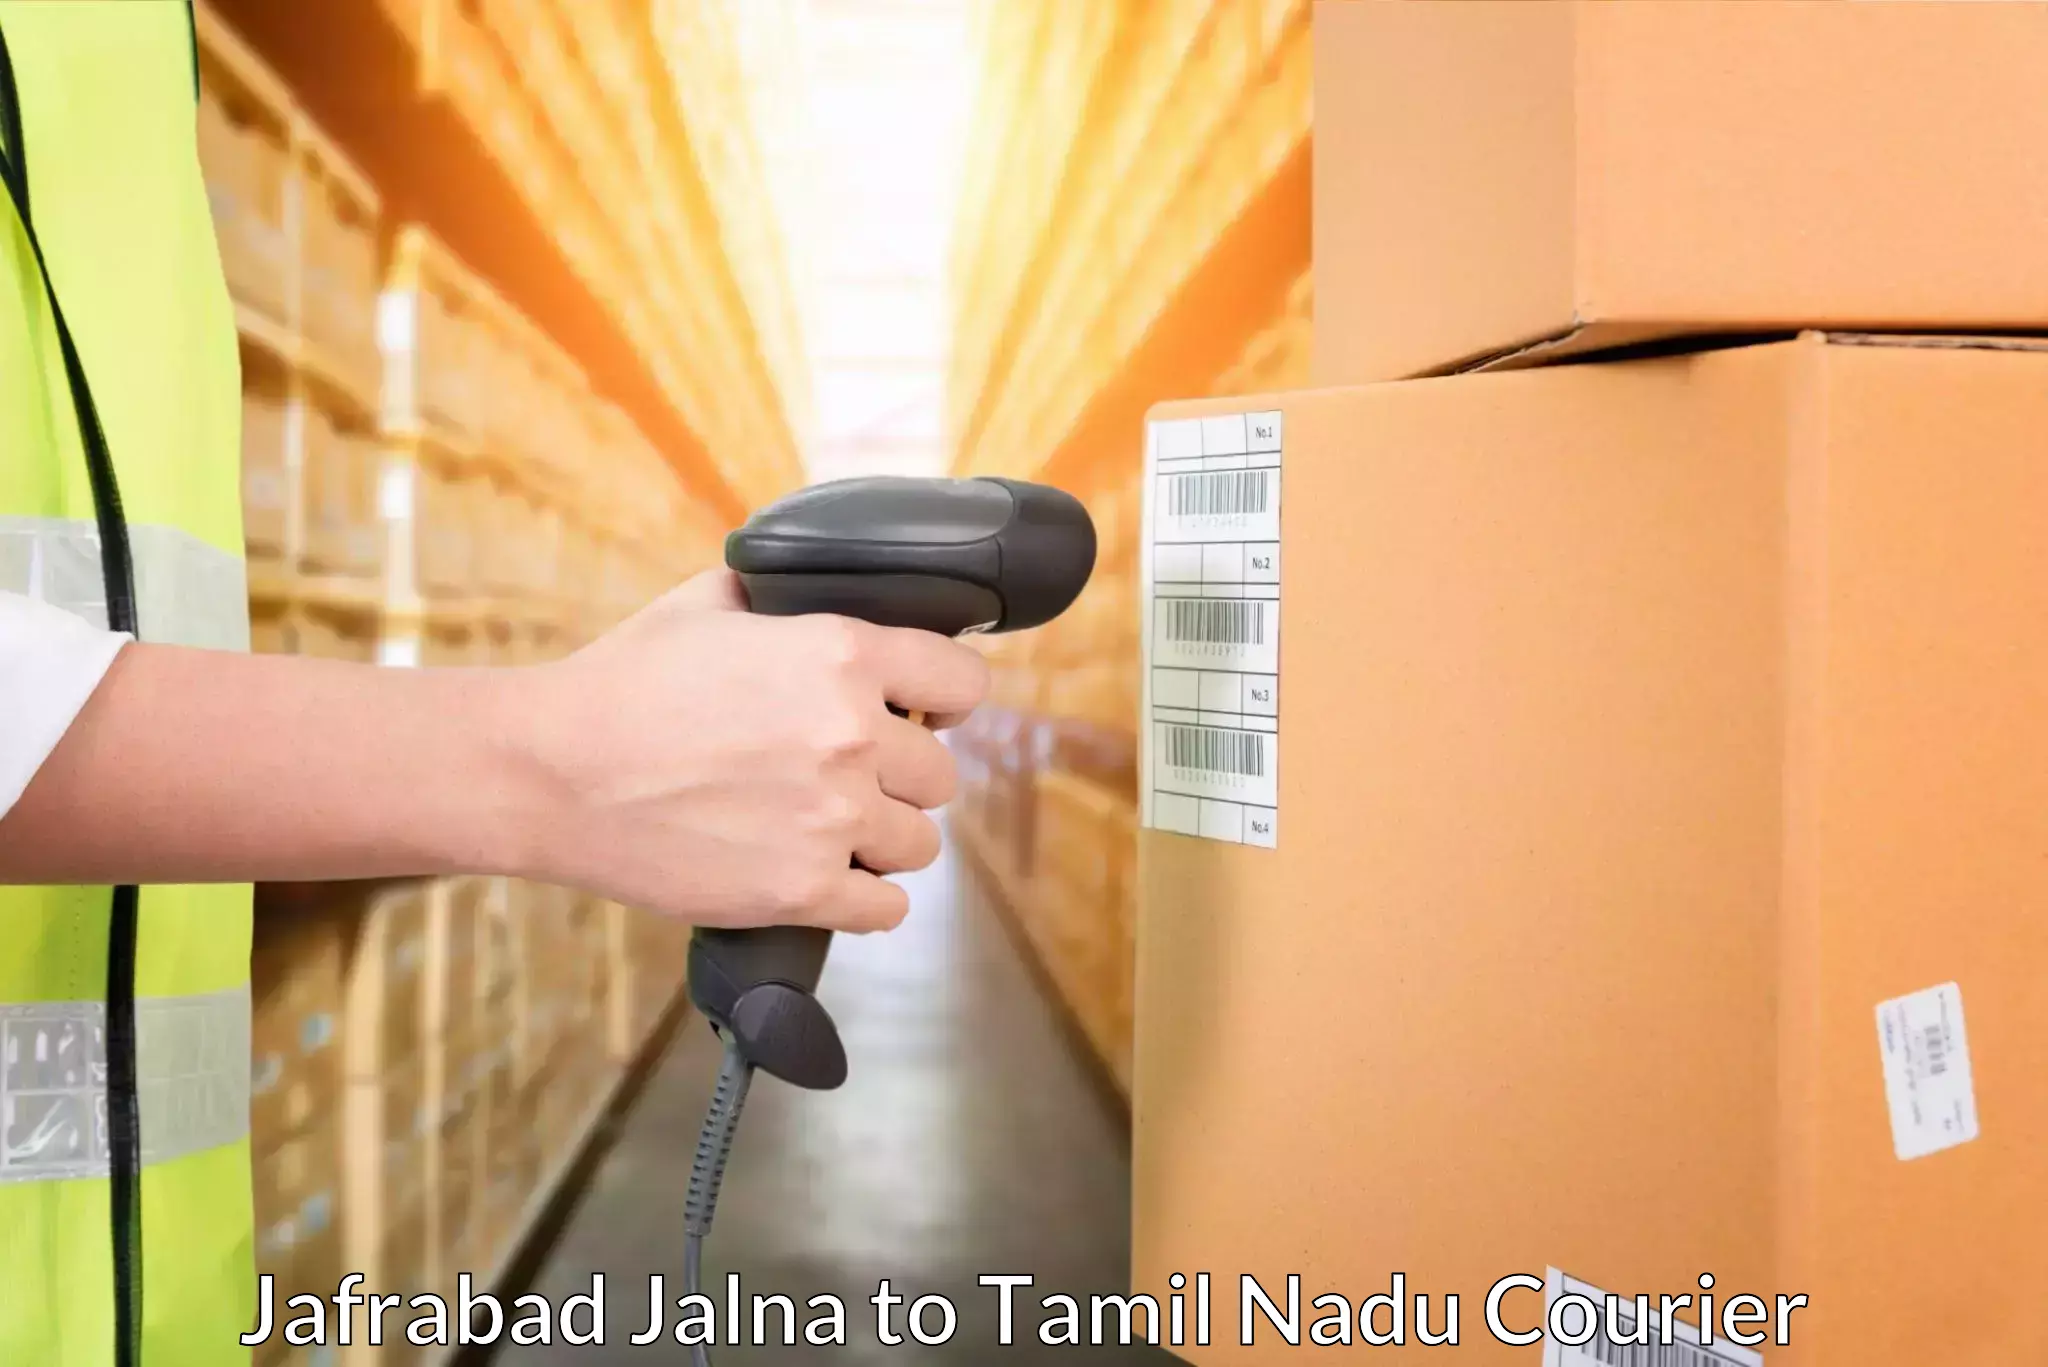 Efficient parcel delivery Jafrabad Jalna to Tiruppur